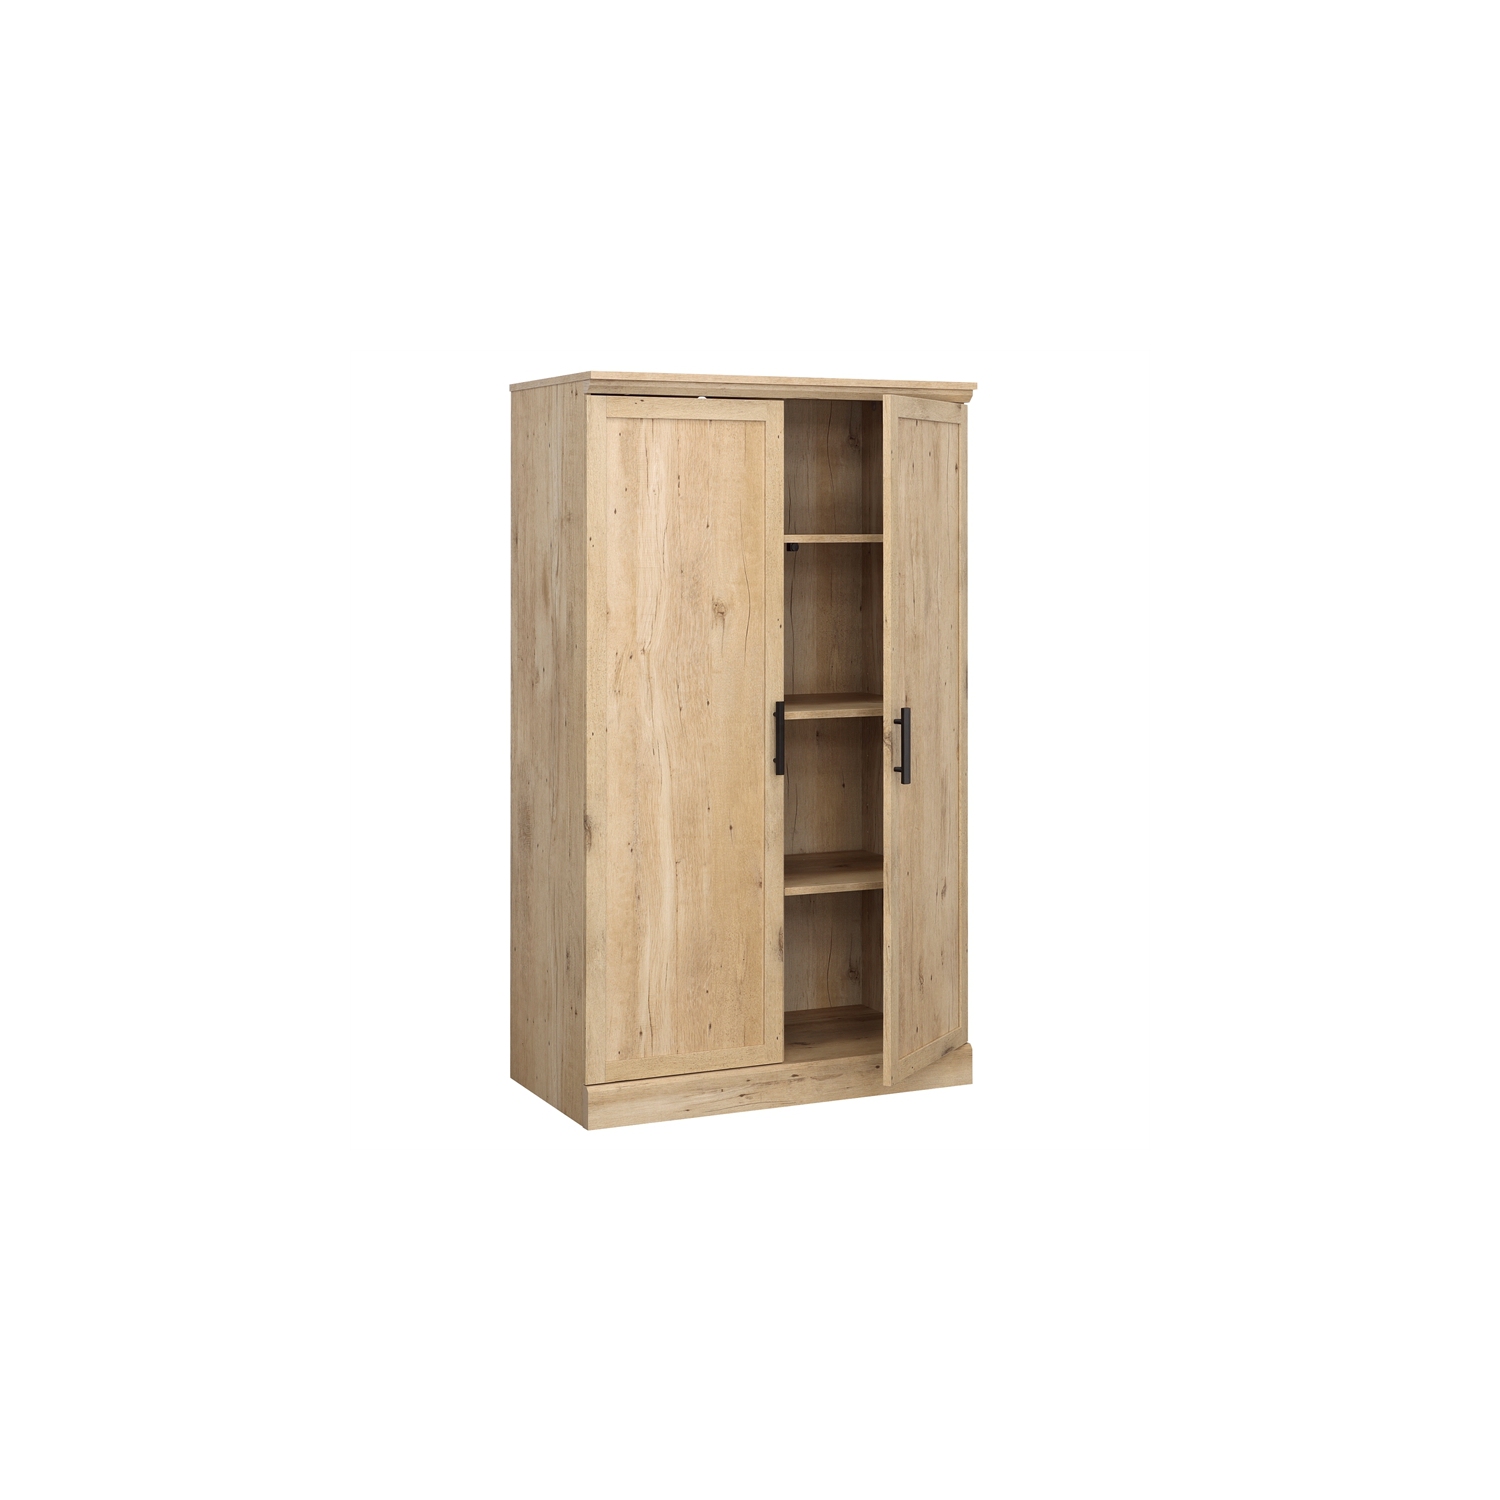  Sauder Aspen Post Engineered Wood Storage Cabinet in